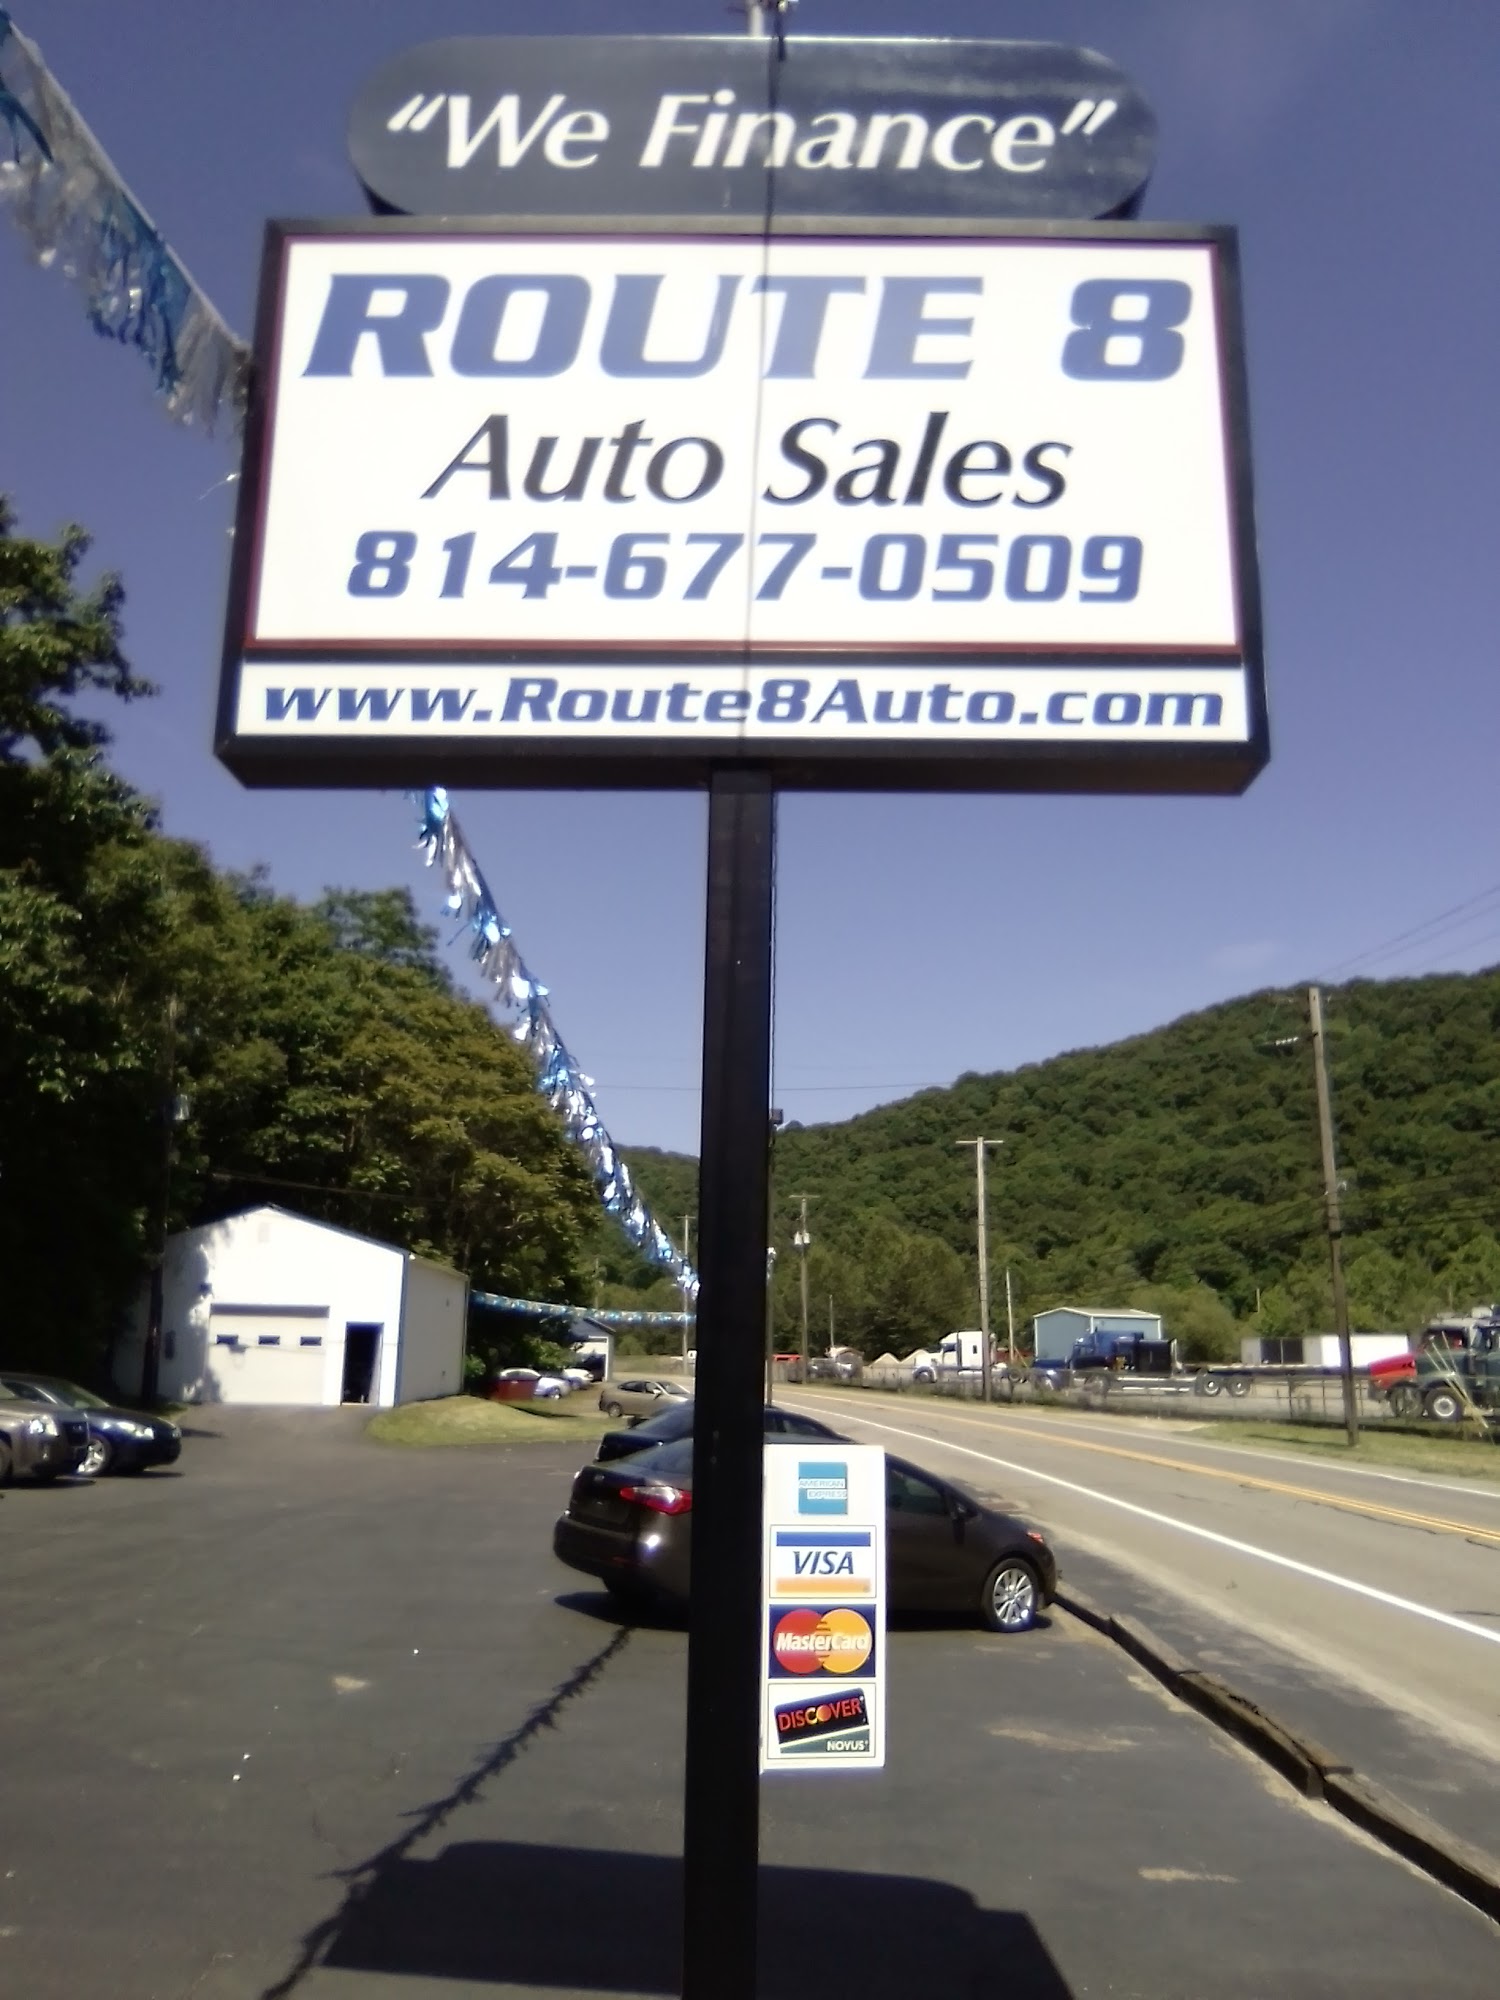 Route 8 Auto Sales